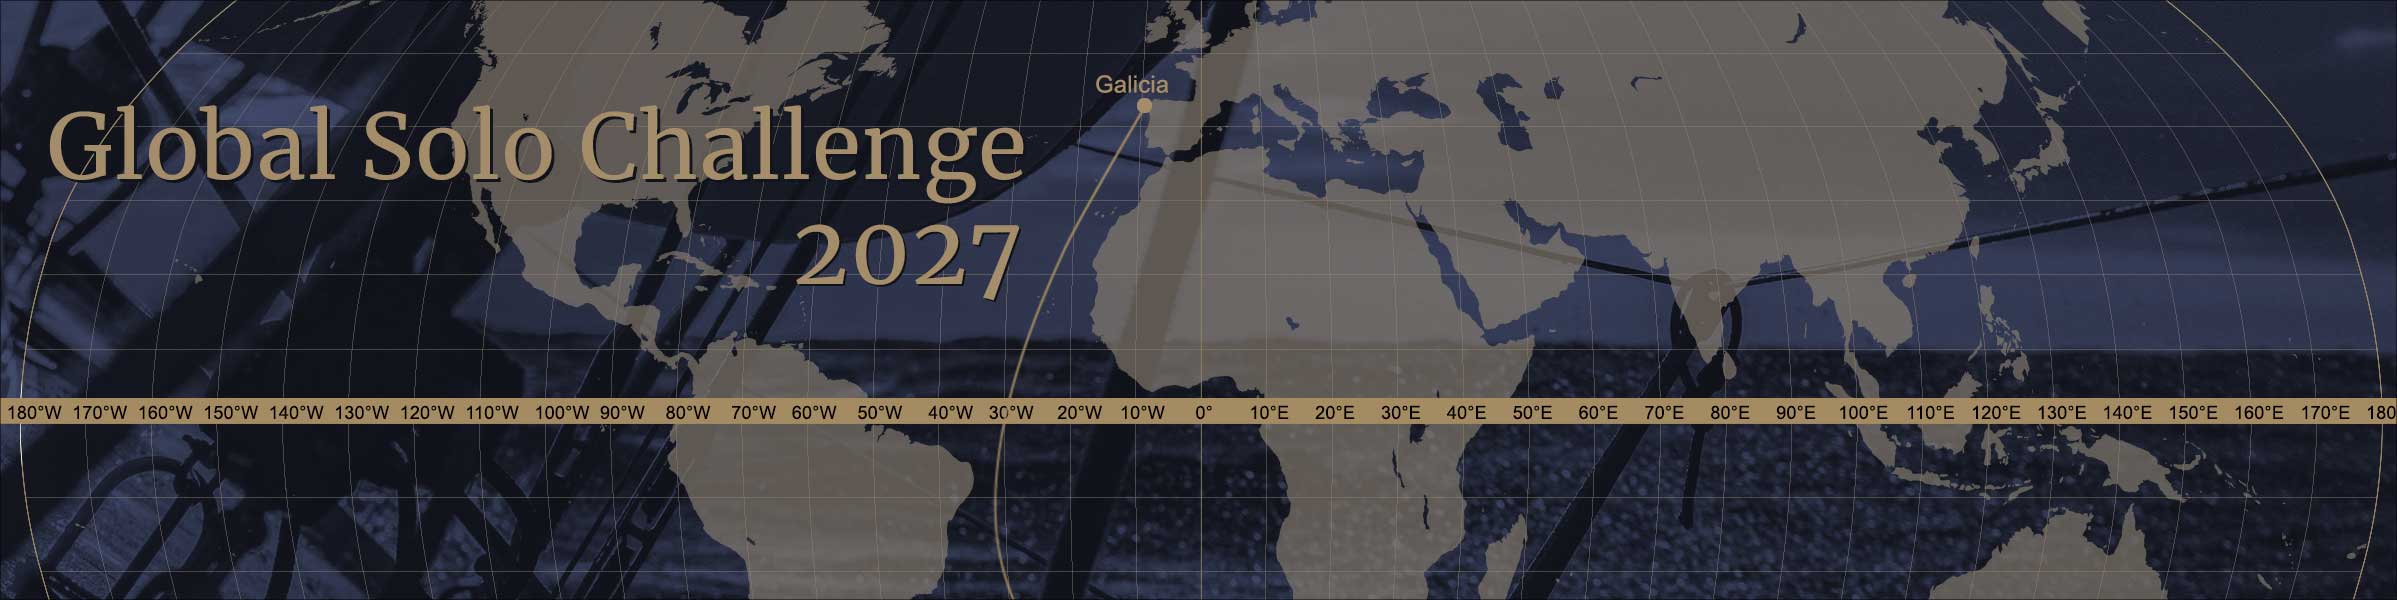 Global Solo Challenge 2027